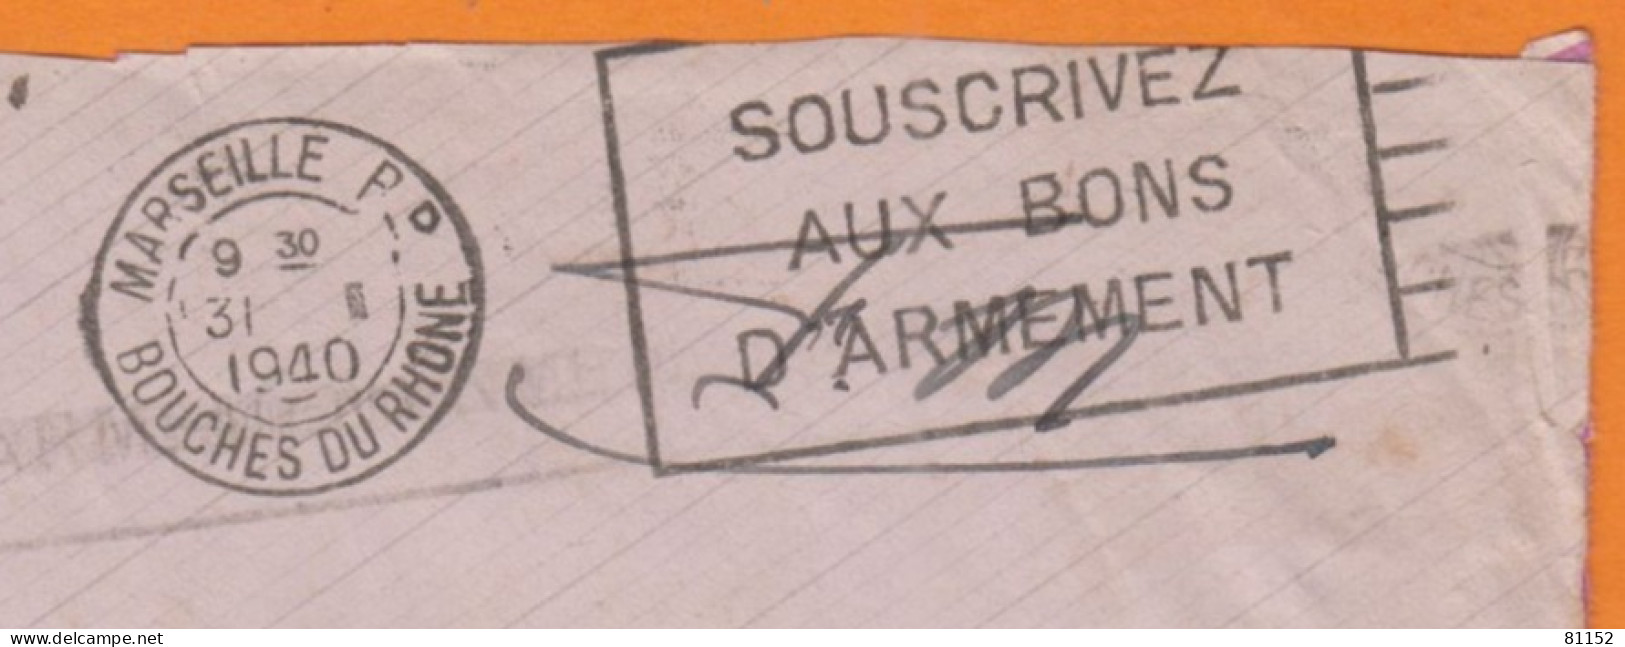 Flier " SOUSCRIVEZ  AUX BONS D'ARMEMENT " Sur Lettre En F.M.avec Courrier D'un SERGENT 1940 De MARSEILLE - Mechanische Stempels (varia)